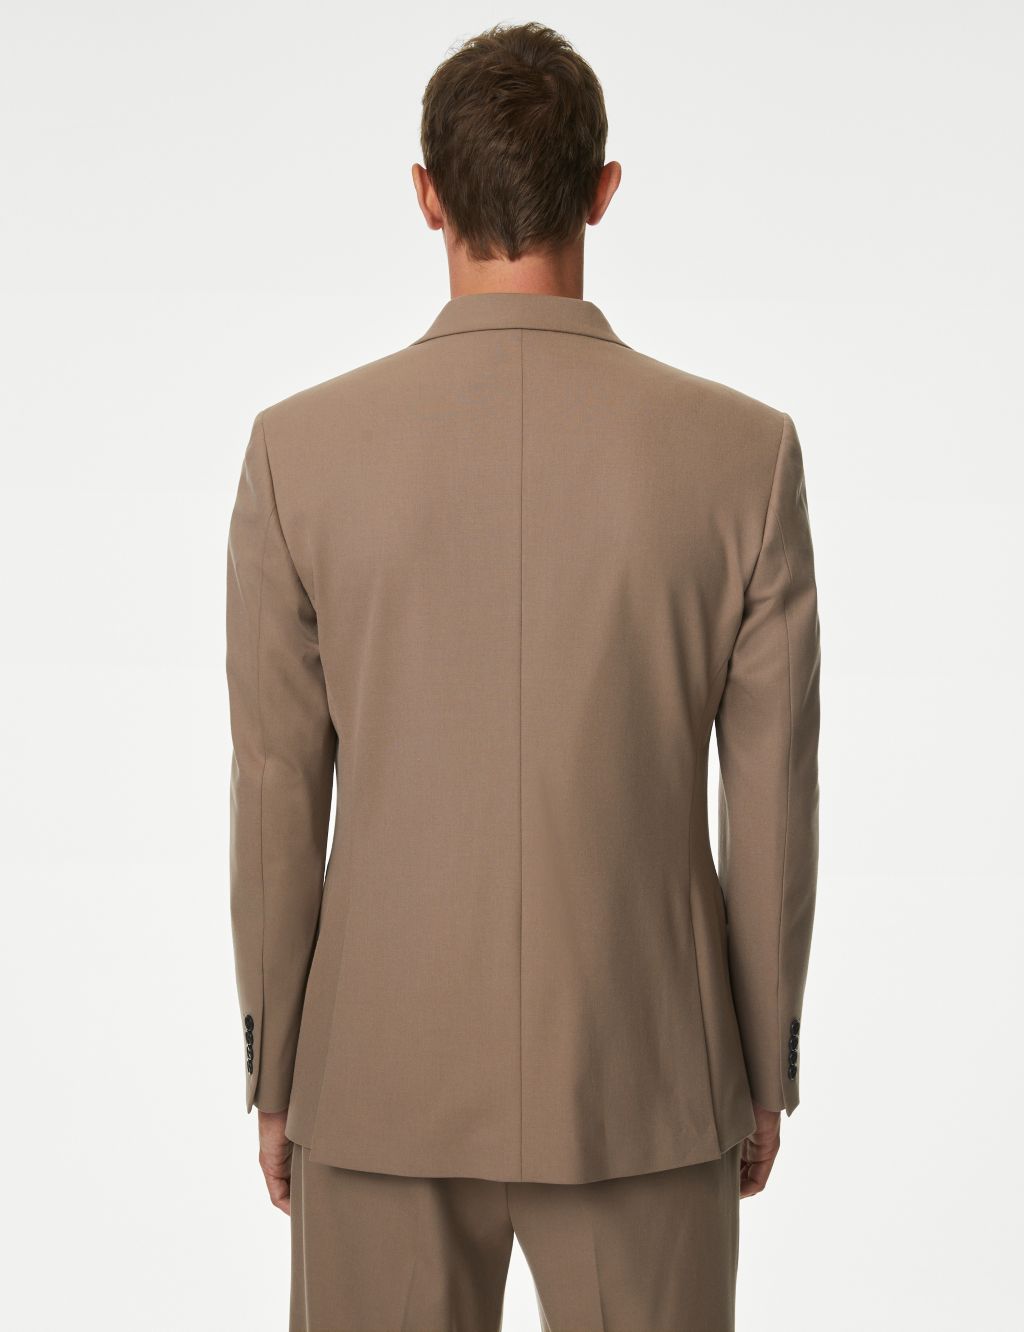 Regular Fit Plain Stretch Suit Jacket image 5